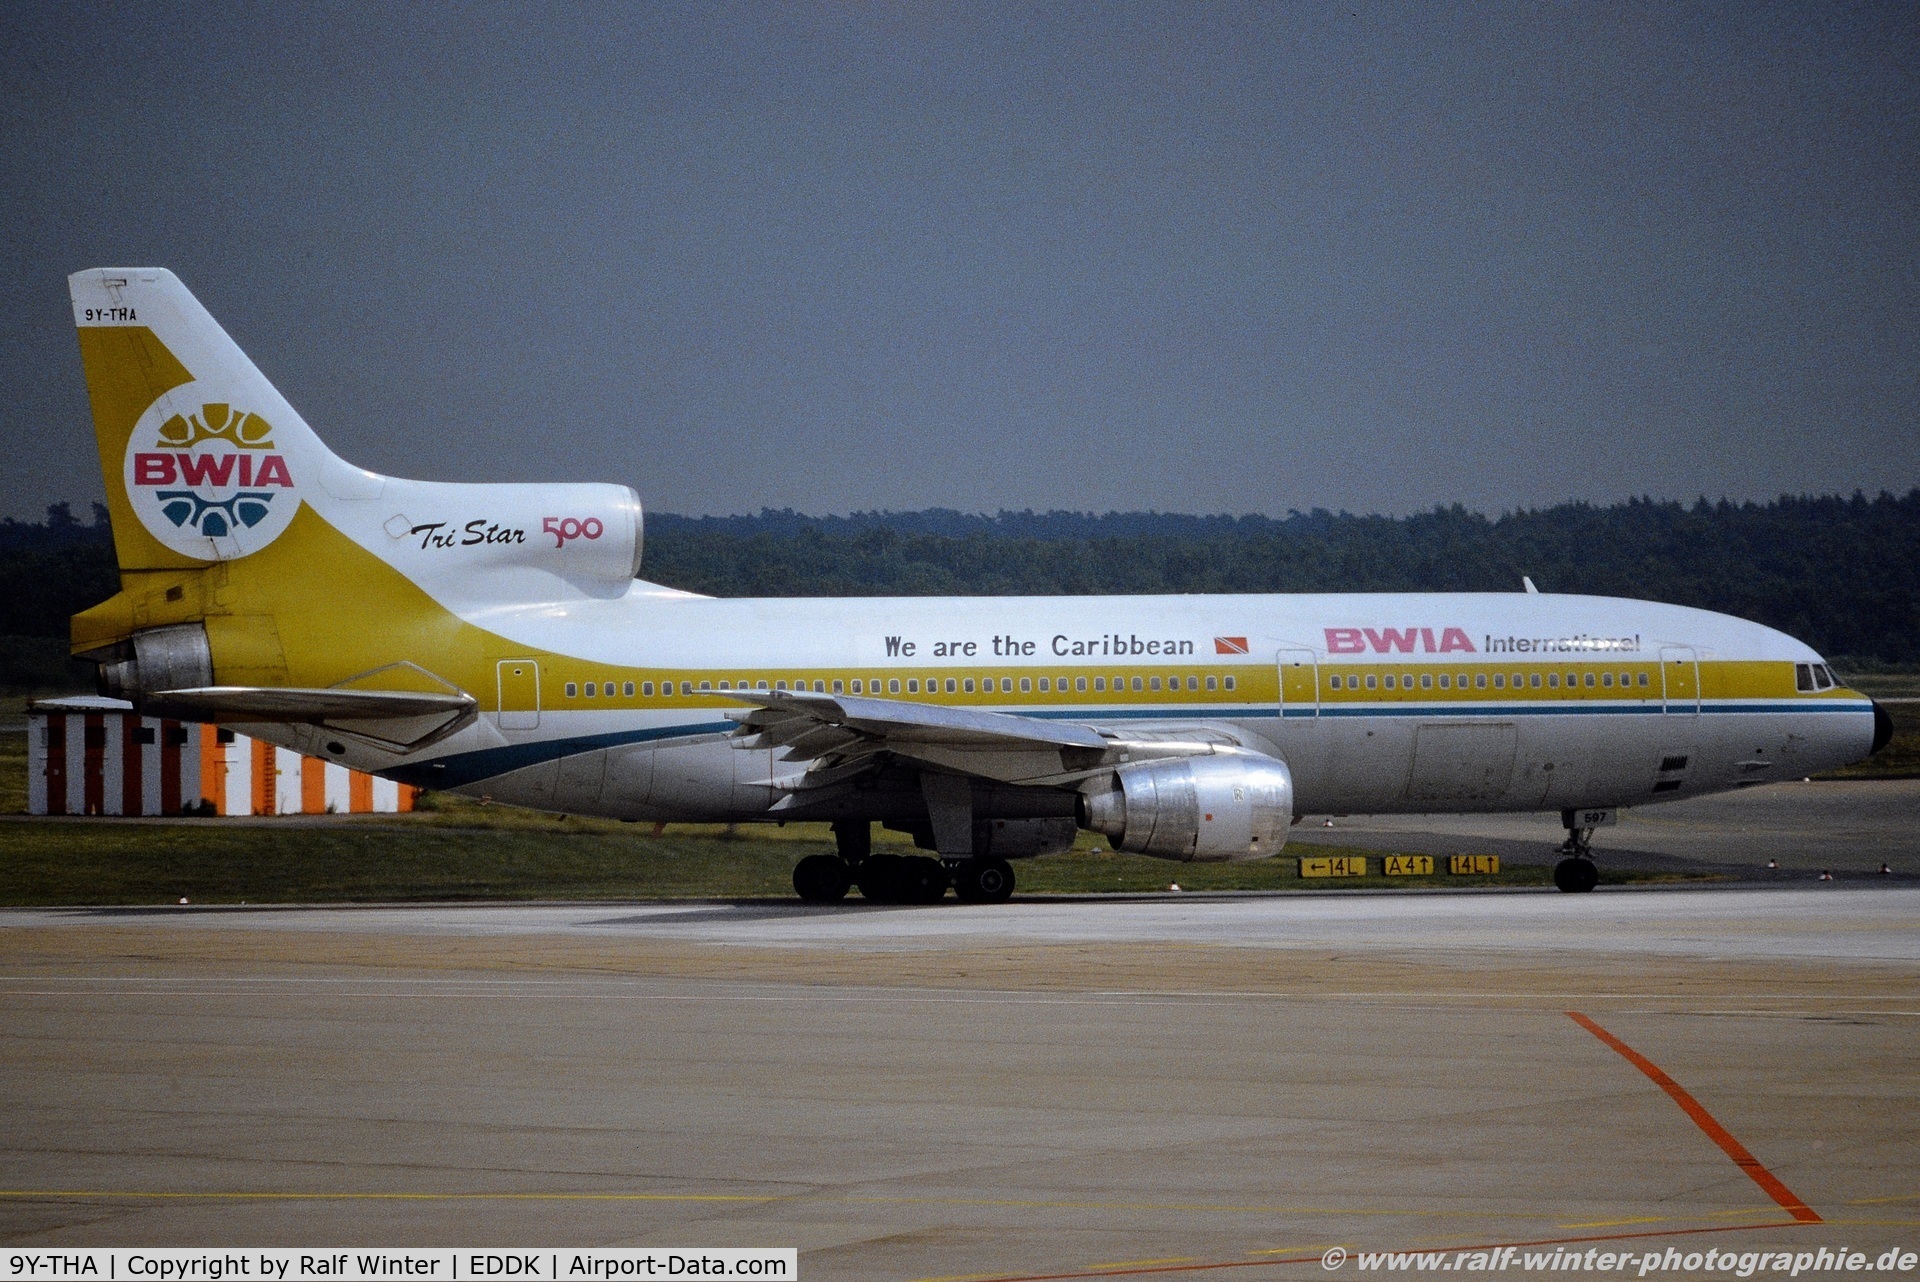 9Y-THA, 1981 Lockheed L-1011 Tristar 500 C/N 1222, Lockheed L-1011-385-3-500 - BWIA International 'Sunjet Antigua' - 1222 - 9Y-THA - 1991 - CGN